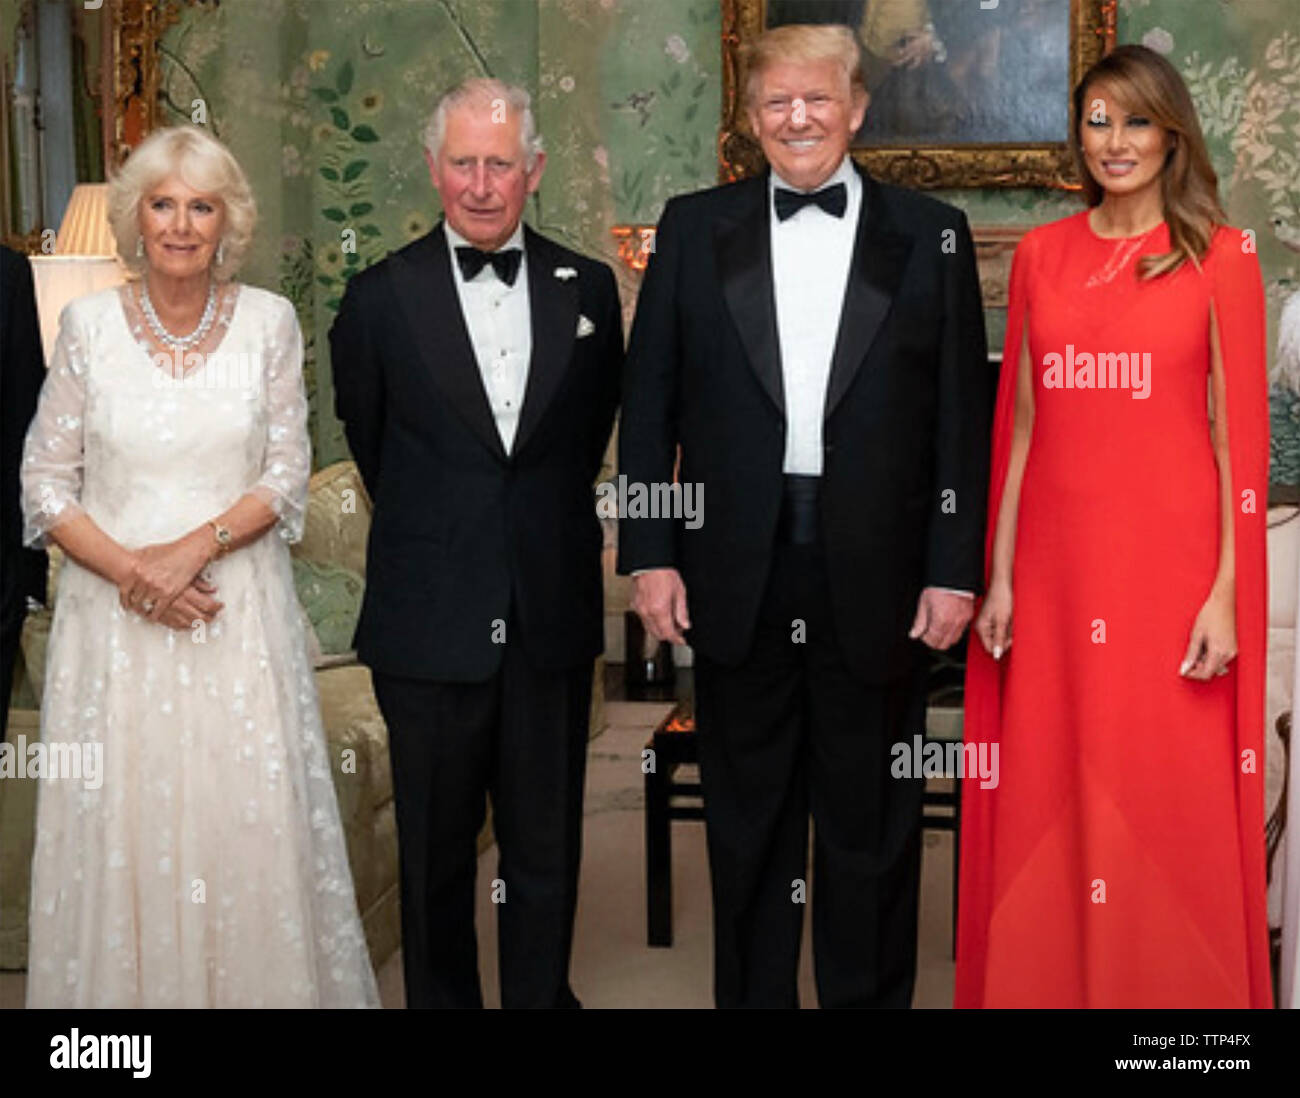 Le PRINCE CHARLES avec nous Le président Donald Trump et leurs femmes Camilla et Melania Trump lors de sa visite officielle en juin 2019. Photo : Maison Blanche. Banque D'Images